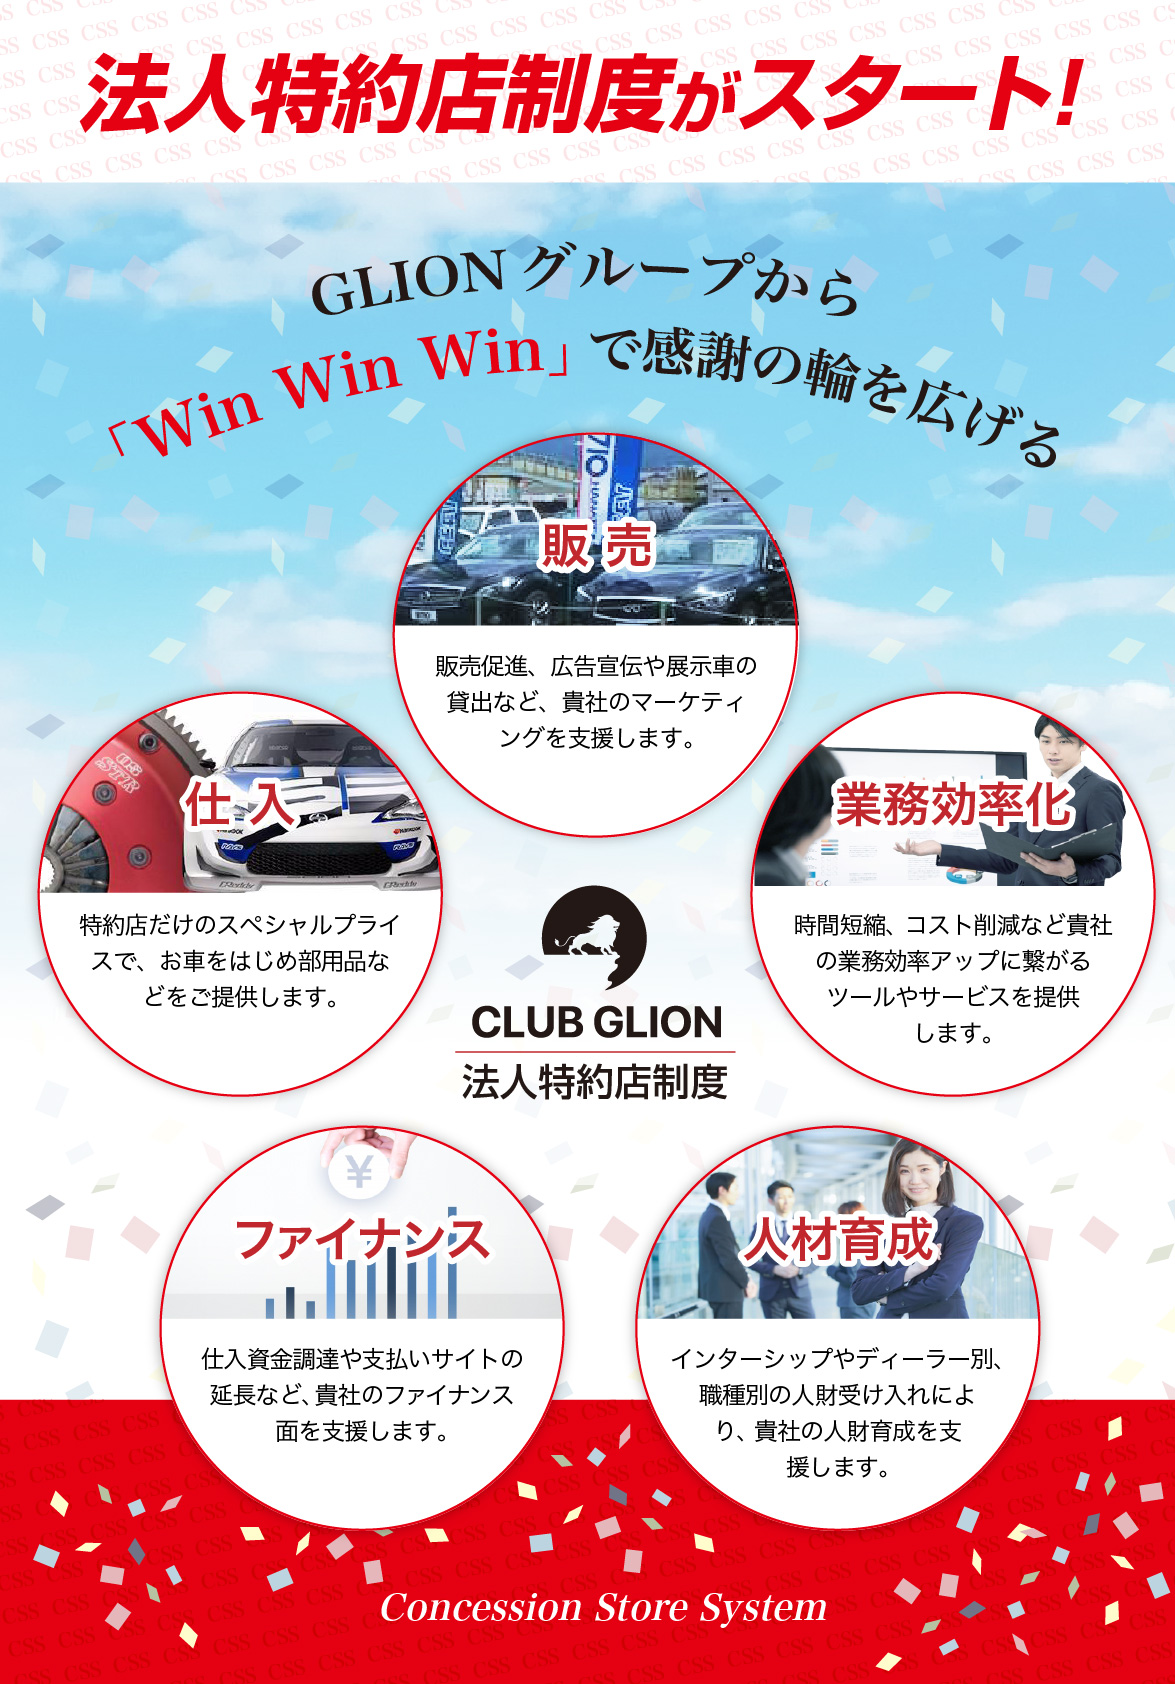 CLUB GLION 法人特約店制度